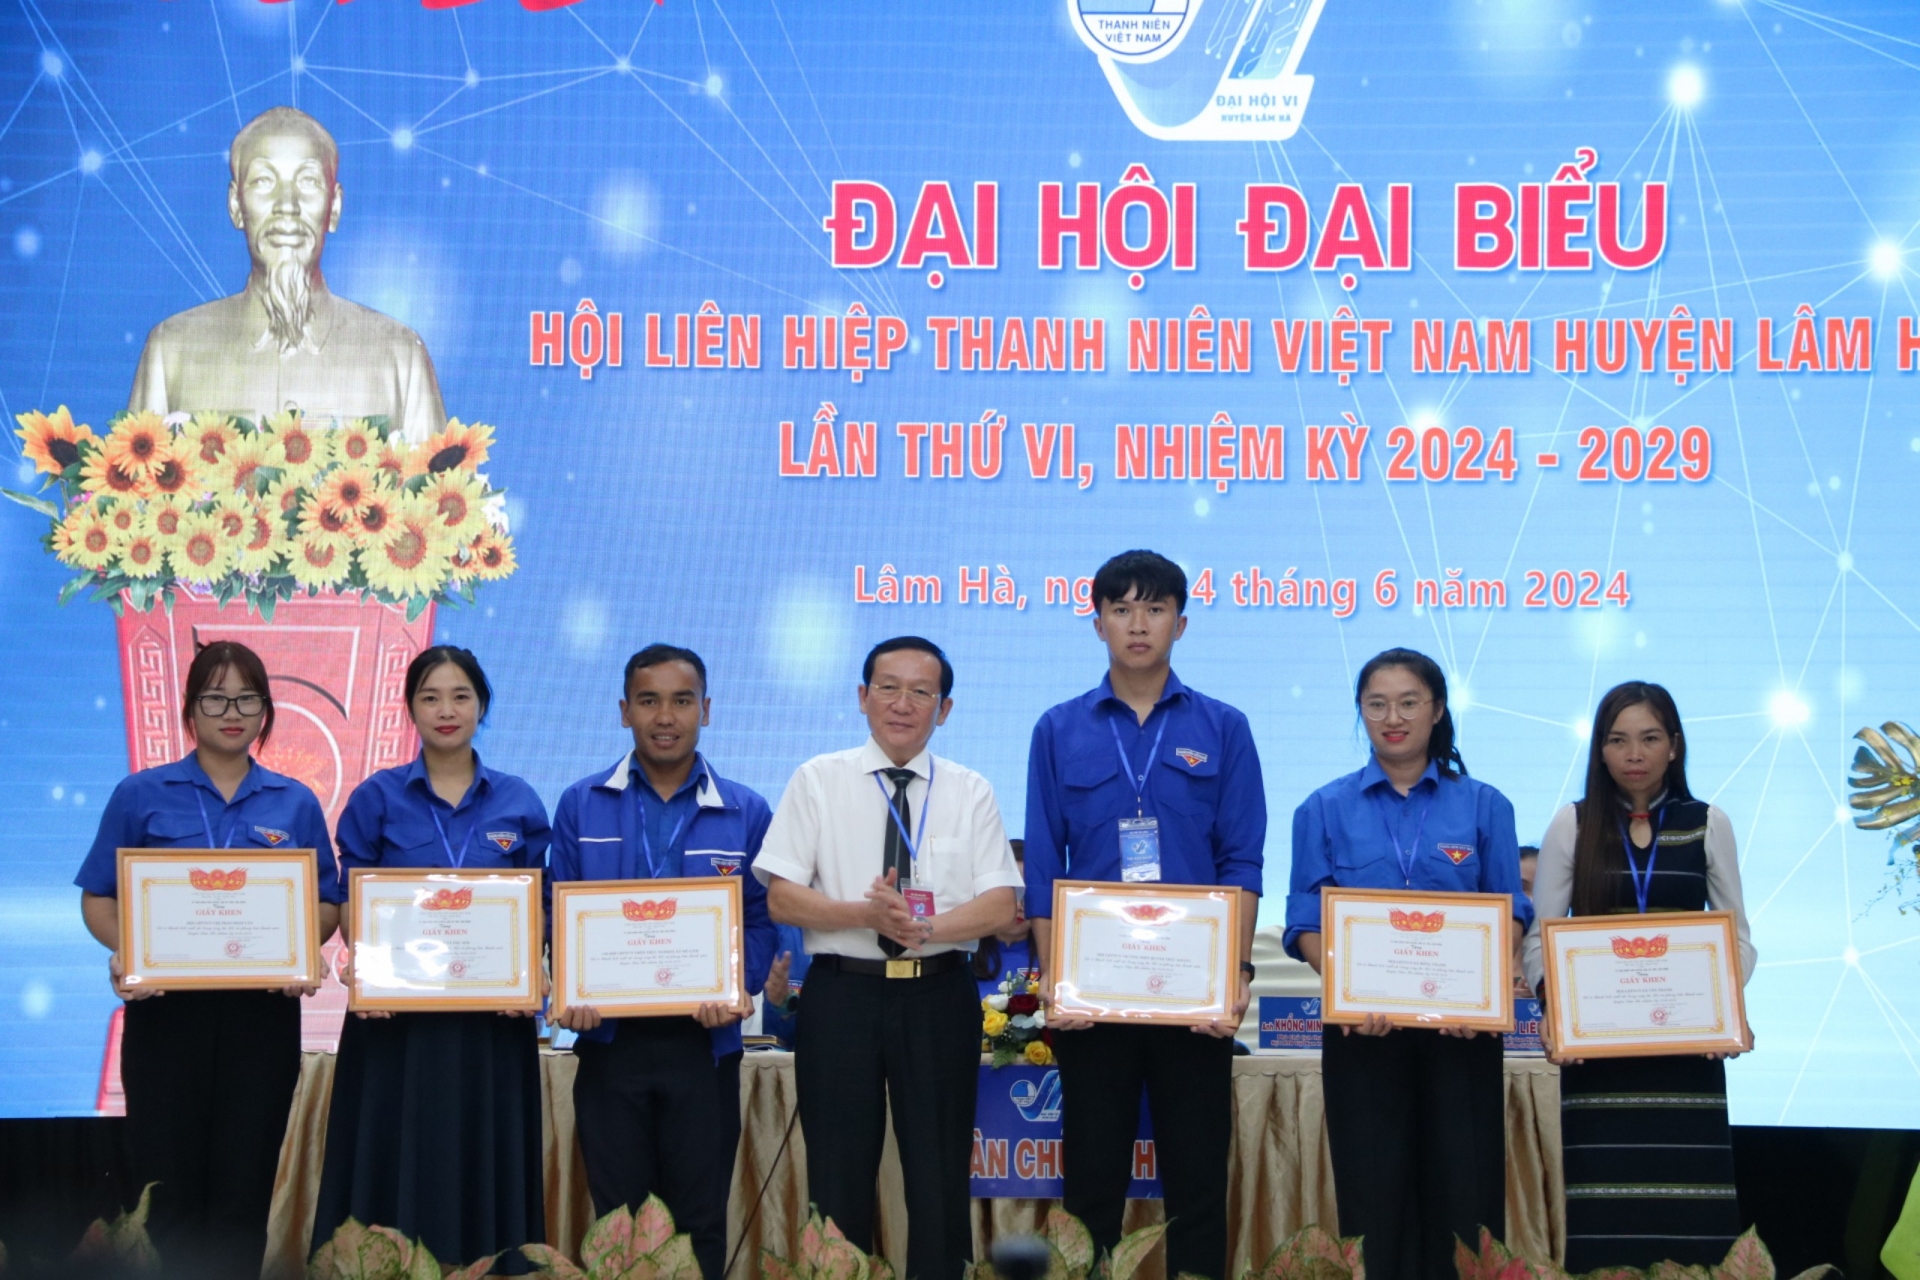 Đồng chí Nguyễn Văn Hoàng - Chủ tịch UBND huyện trao giấy khen cho các tập thể